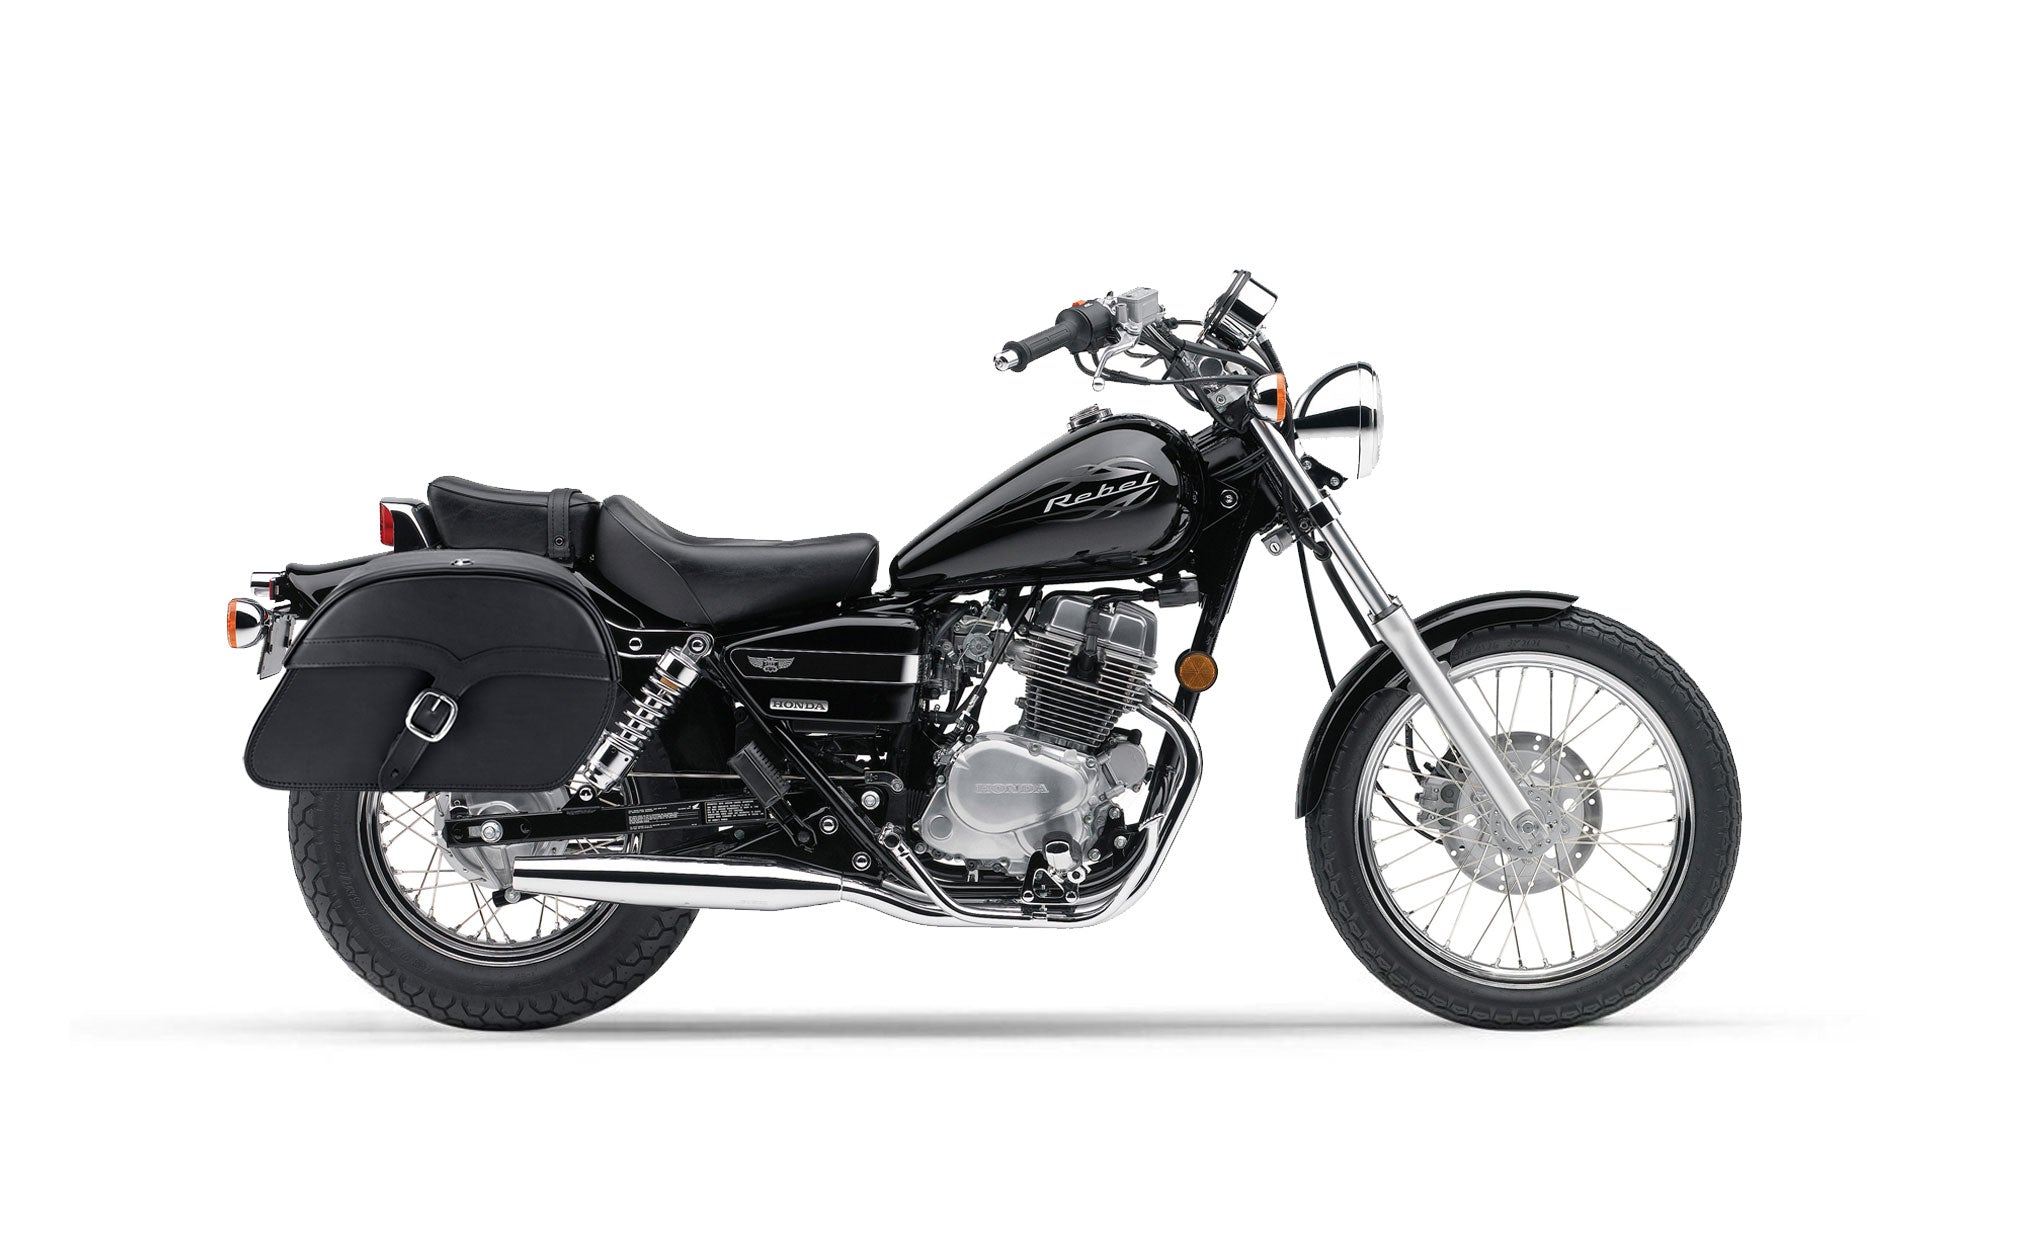 Viking Vintage Single Strap Large Honda Rebel 250 Leather Motorcycle Saddlebags on Bike Photo @expand